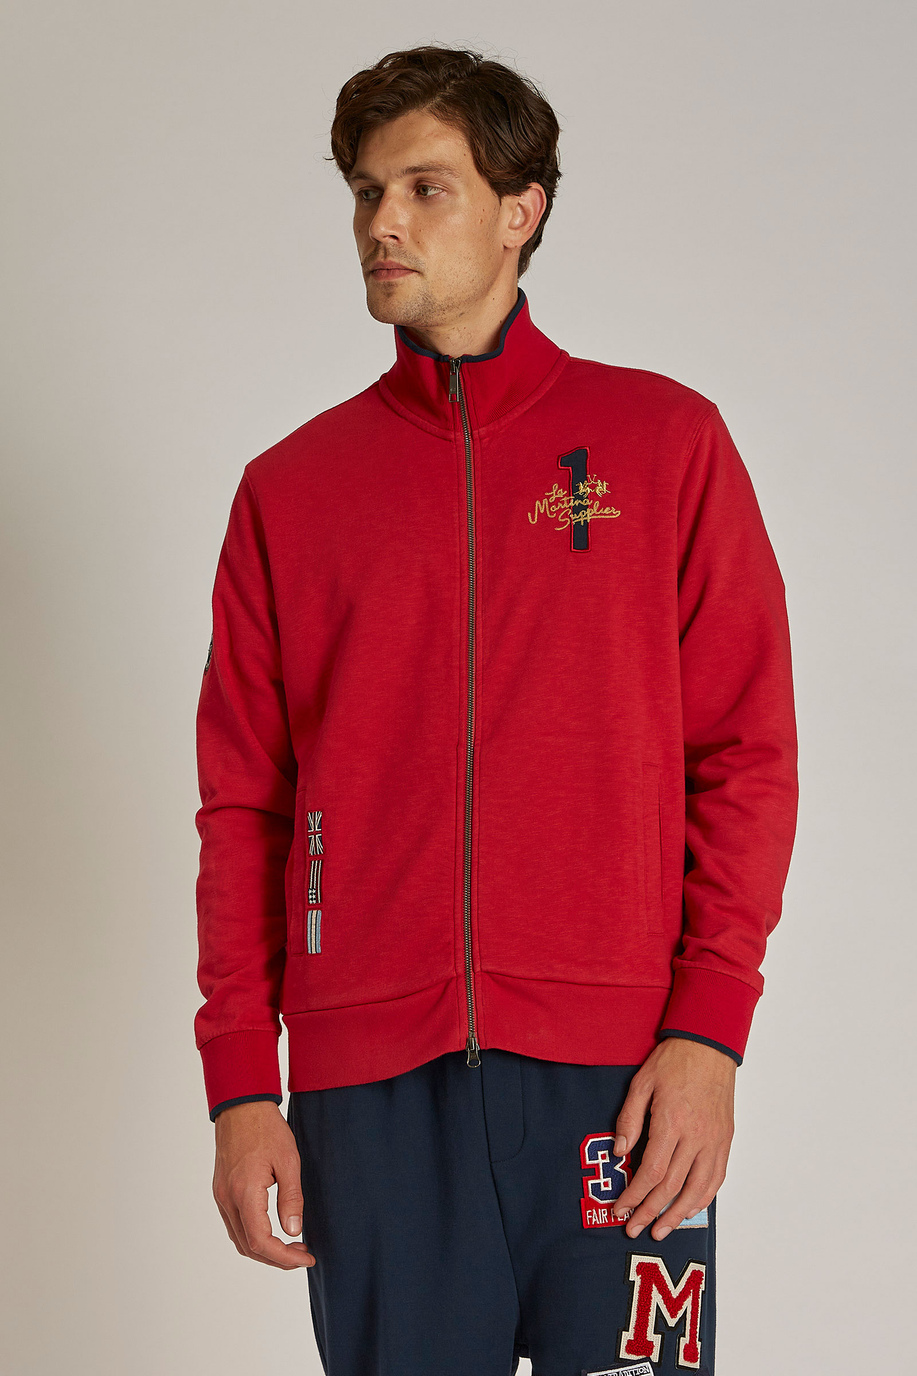 Men's regular-fit zip-up sweatshirt in 100% cotton fabric - Sweatshirts | La Martina - Official Online Shop